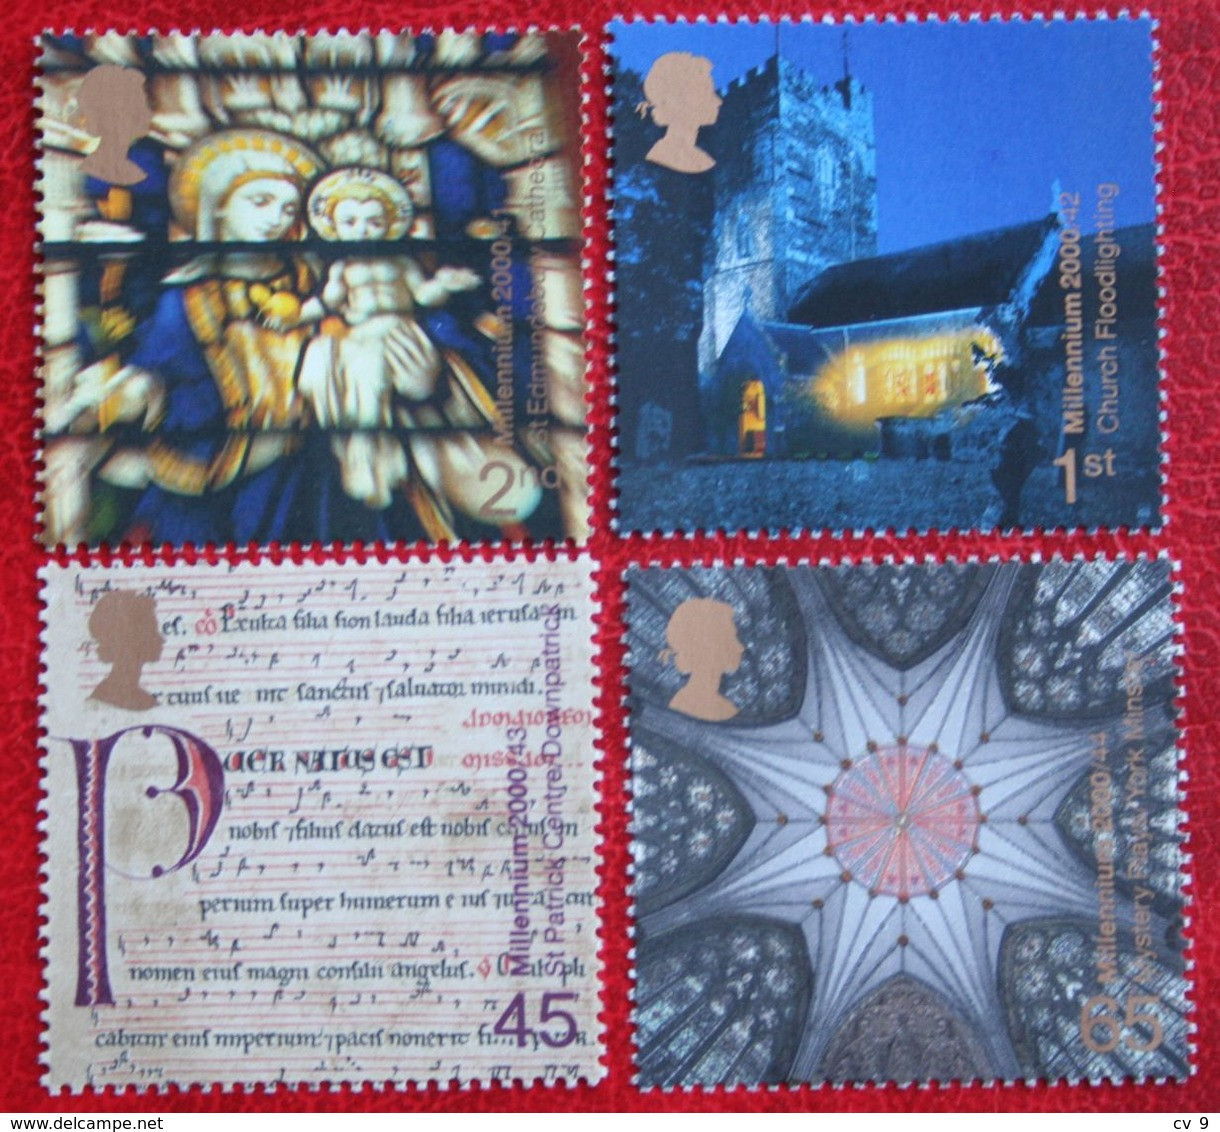 Millennium Series: SPIRIT AND FAITH (Mi 1897-1900) 2000 POSTFRIS MNH ** ENGLAND GRANDE-BRETAGNE GB GREAT BRITAIN - Unused Stamps